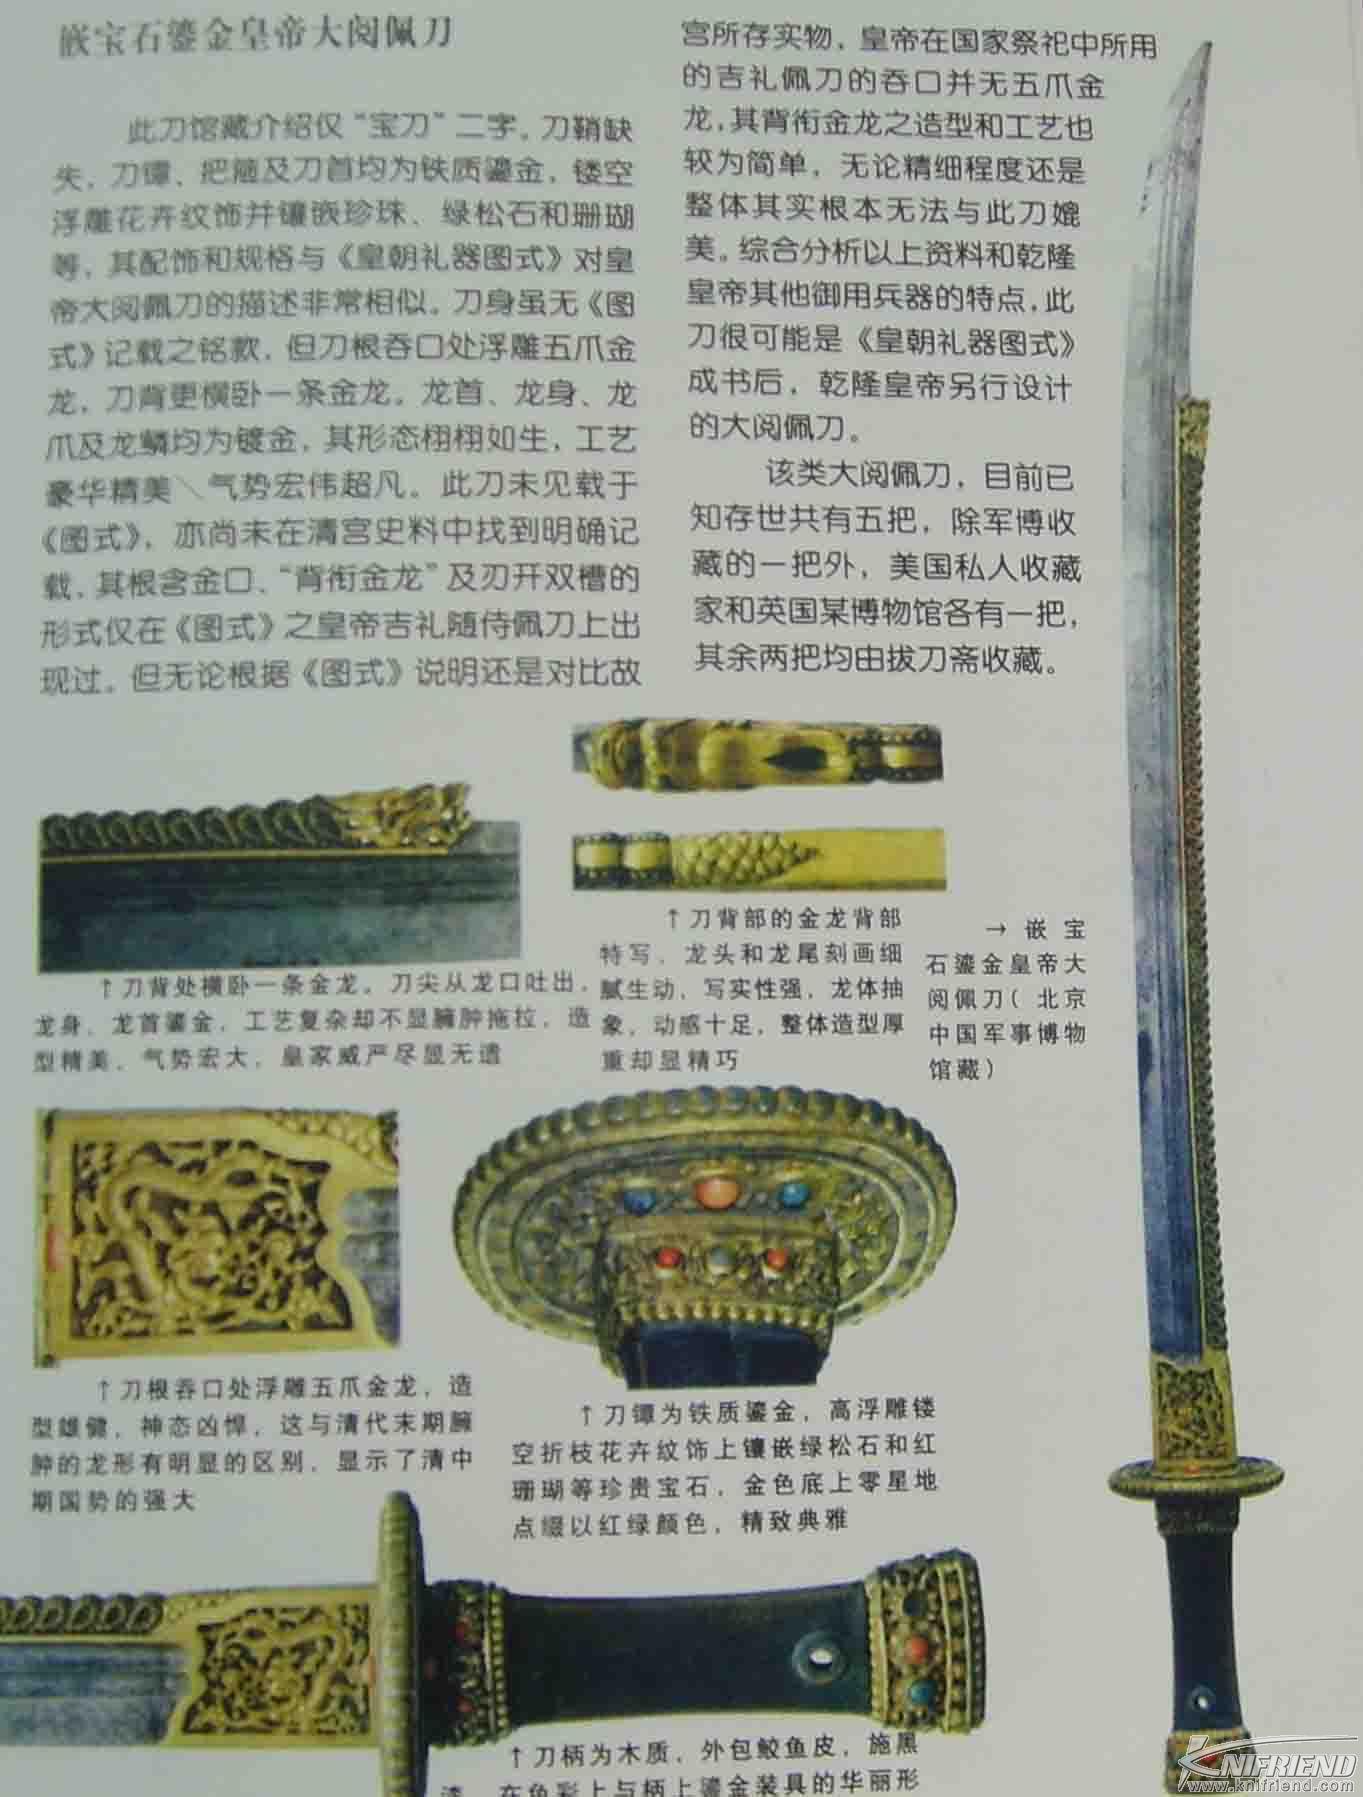 历史的轨迹---中国刀与日本刀发展简述(新手教学帖)_18